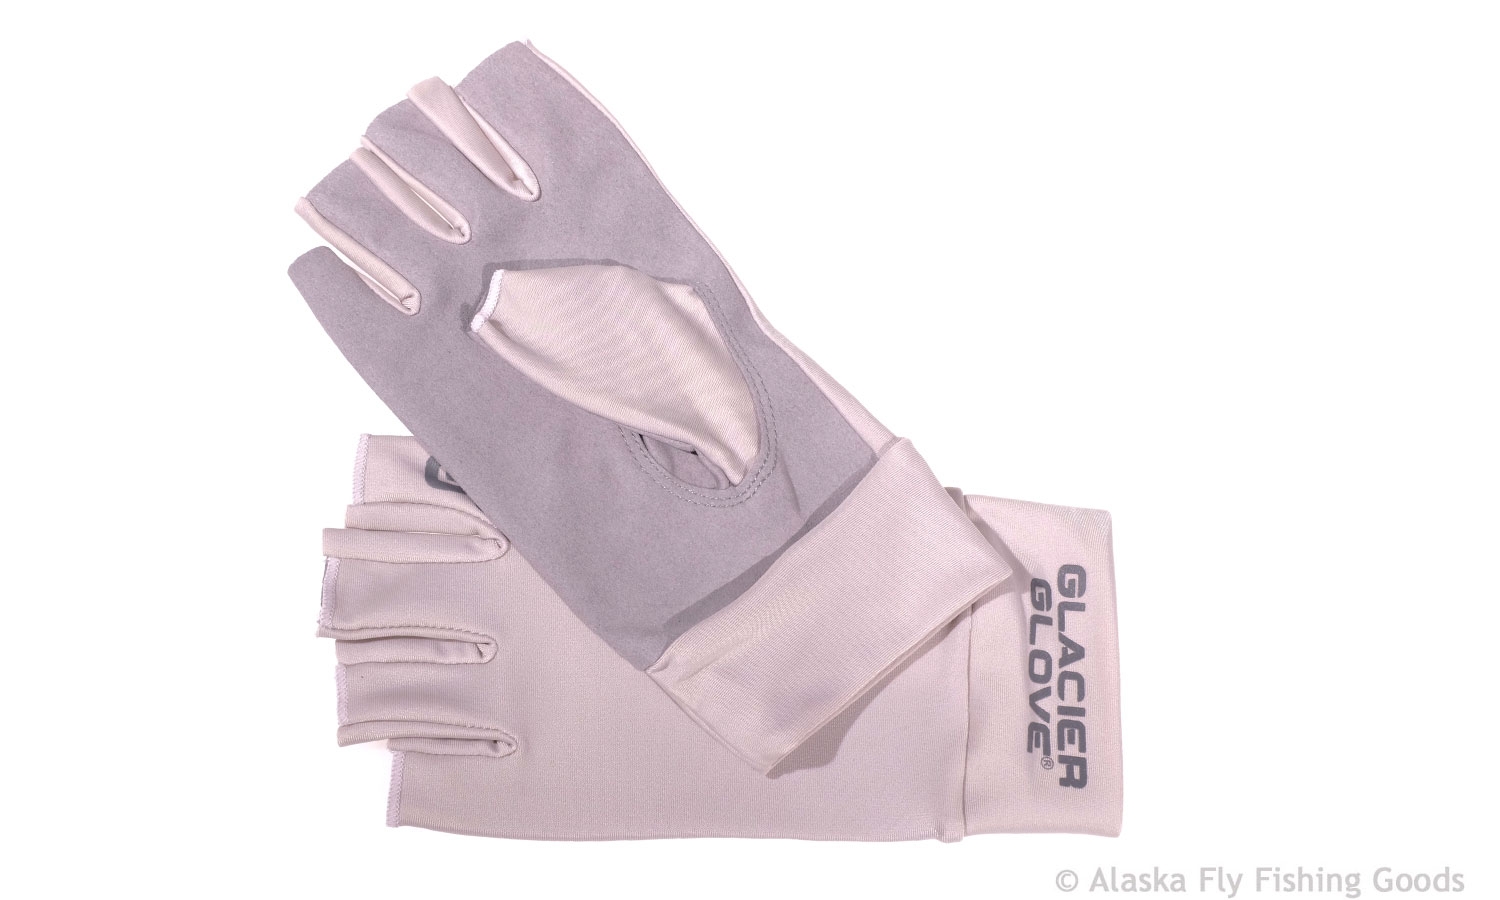 Gloves, Socks & Accessories - Jacket & Insulation - Alaska Fly